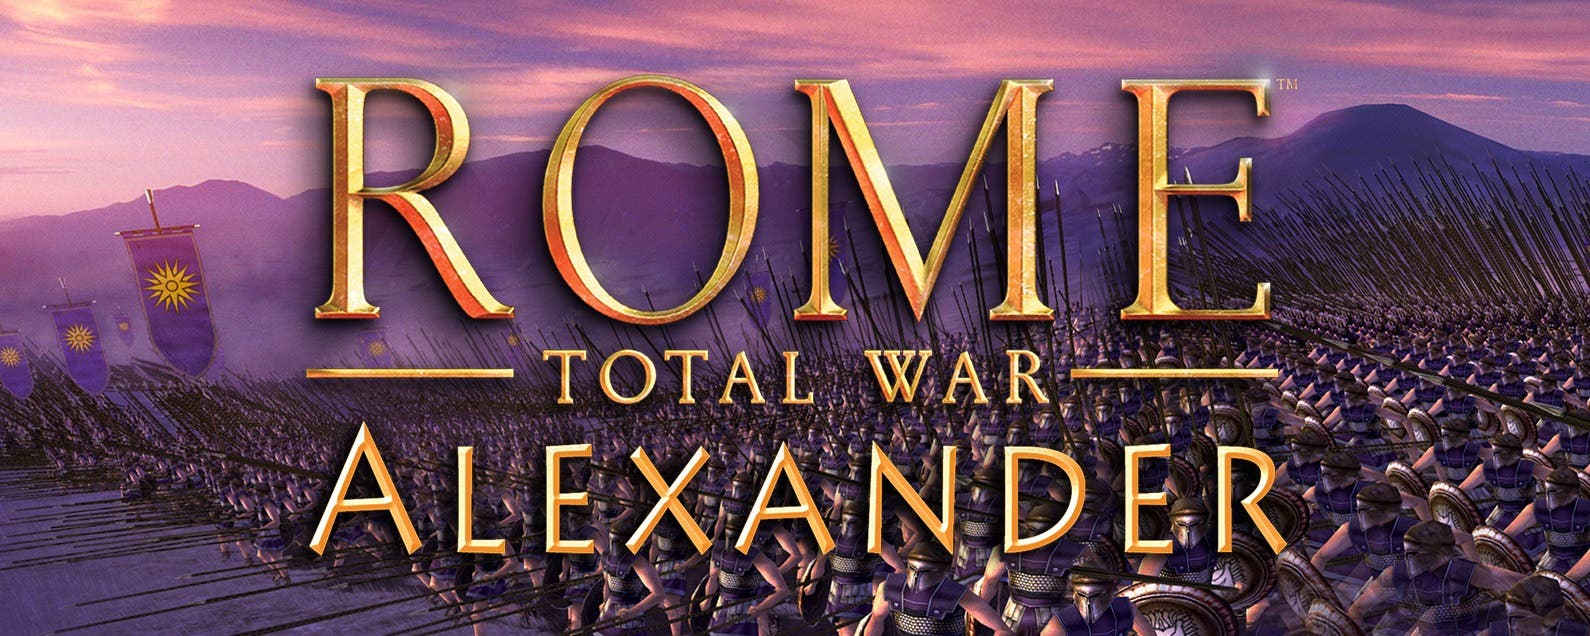 Серия игр Total War в Риме по-прежнему пользуется большой популярностью на игровой арене iPad, выпустив еще один релиз Total War